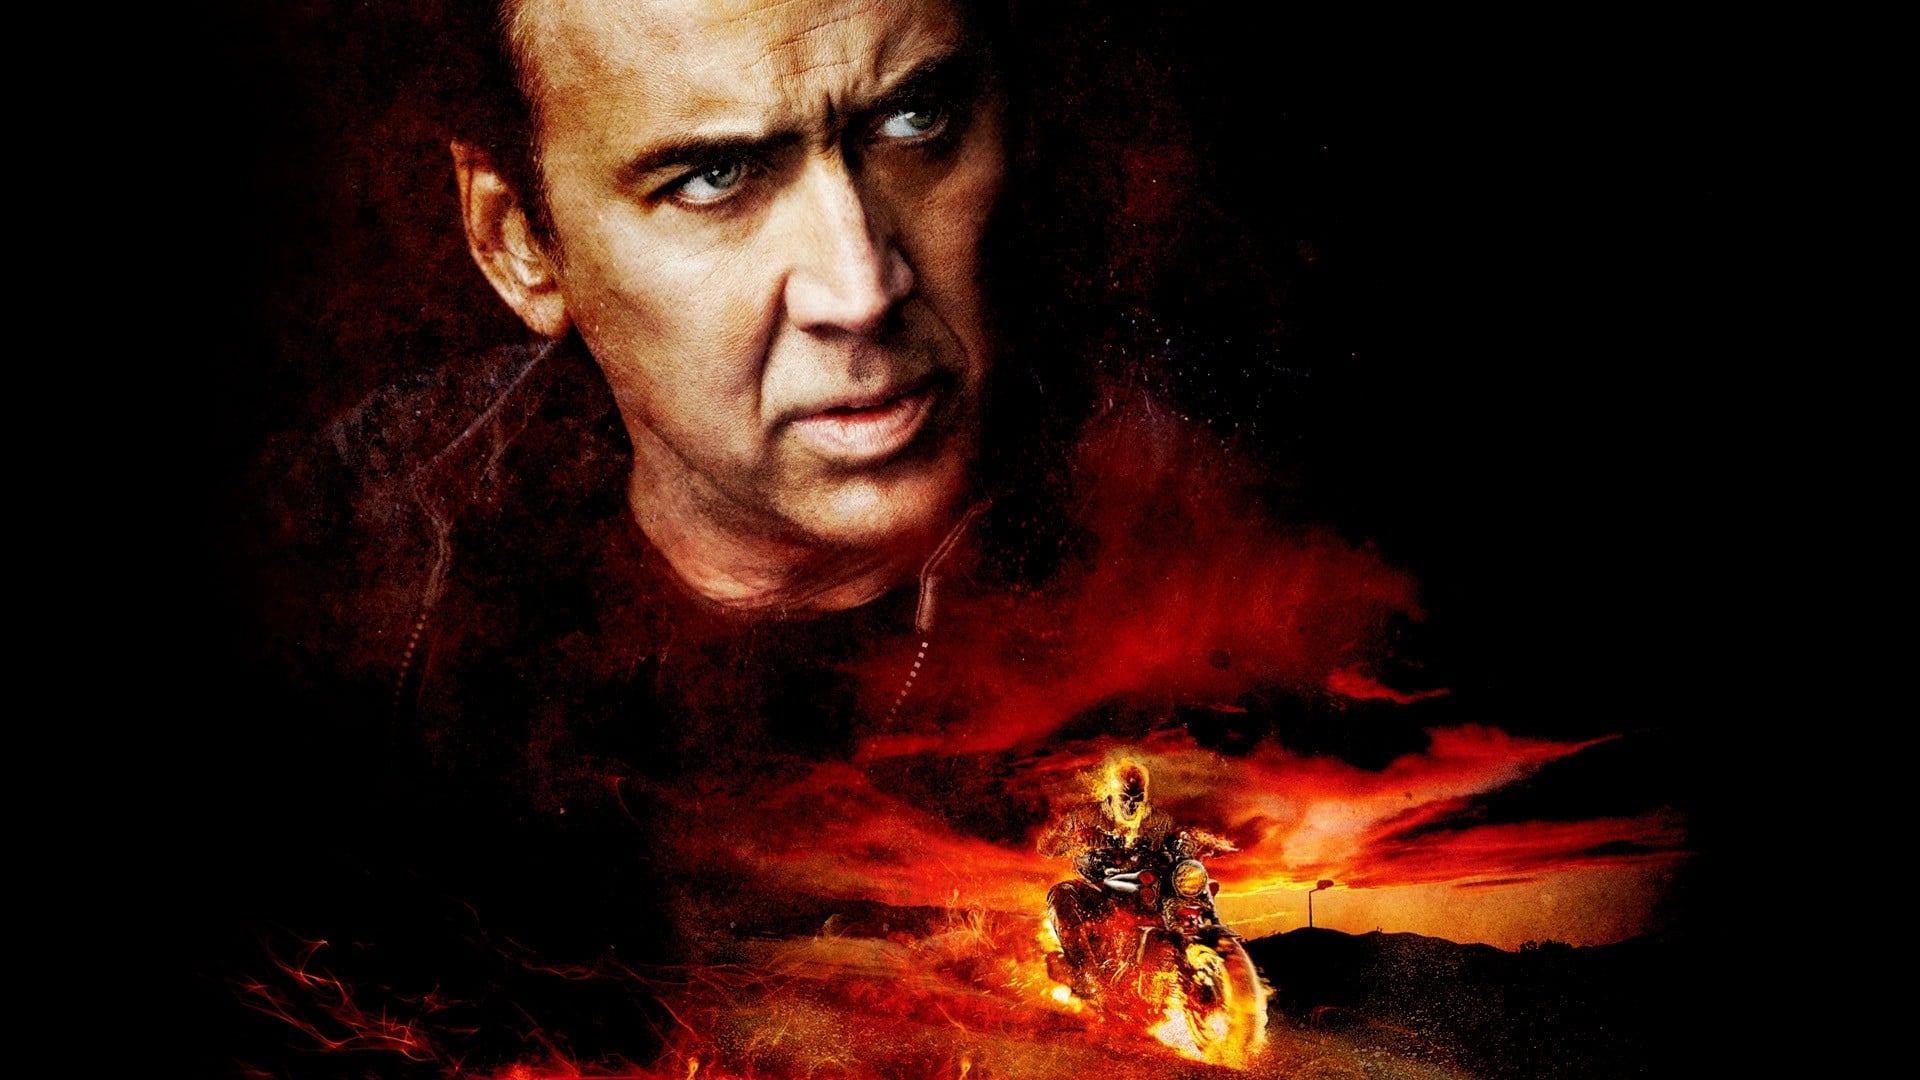 Poster Phim Ma Tốc Độ 2: Linh Hồn Báo Thù (Ghost Rider: Spirit of Vengeance)